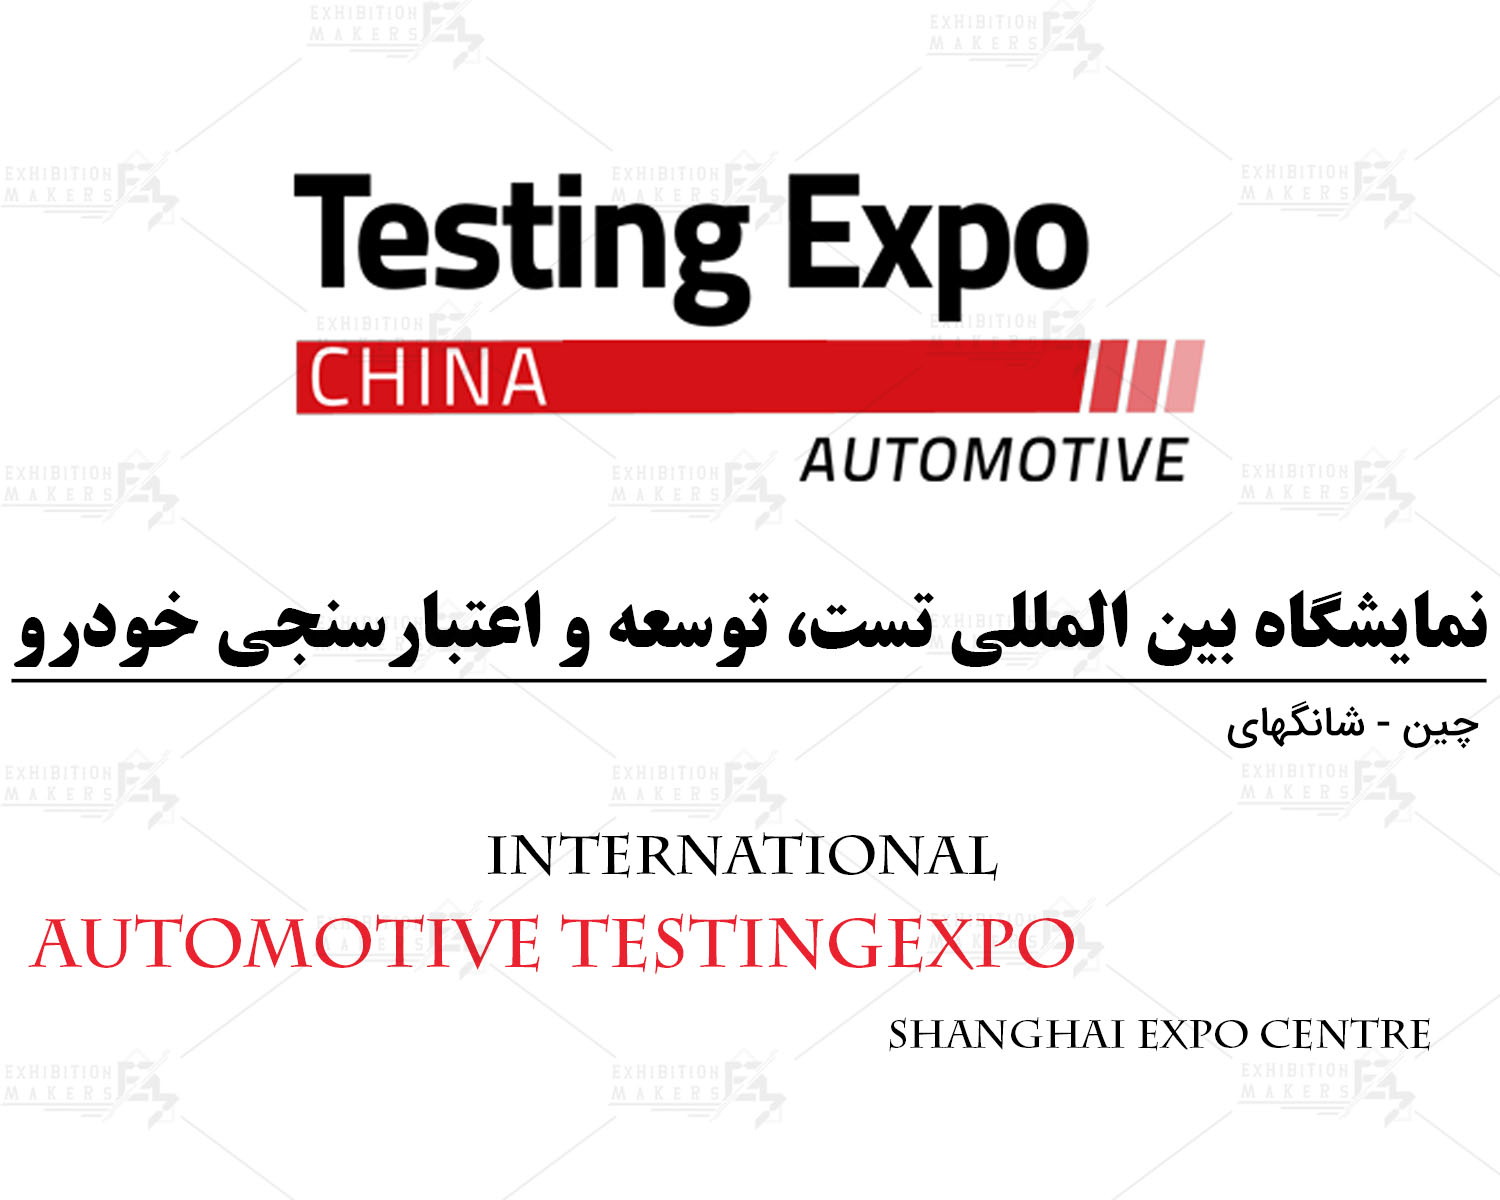 نمایشگاه بین المللی تست، توسعه و اعتبارسنجی خودرو چین شانگهای